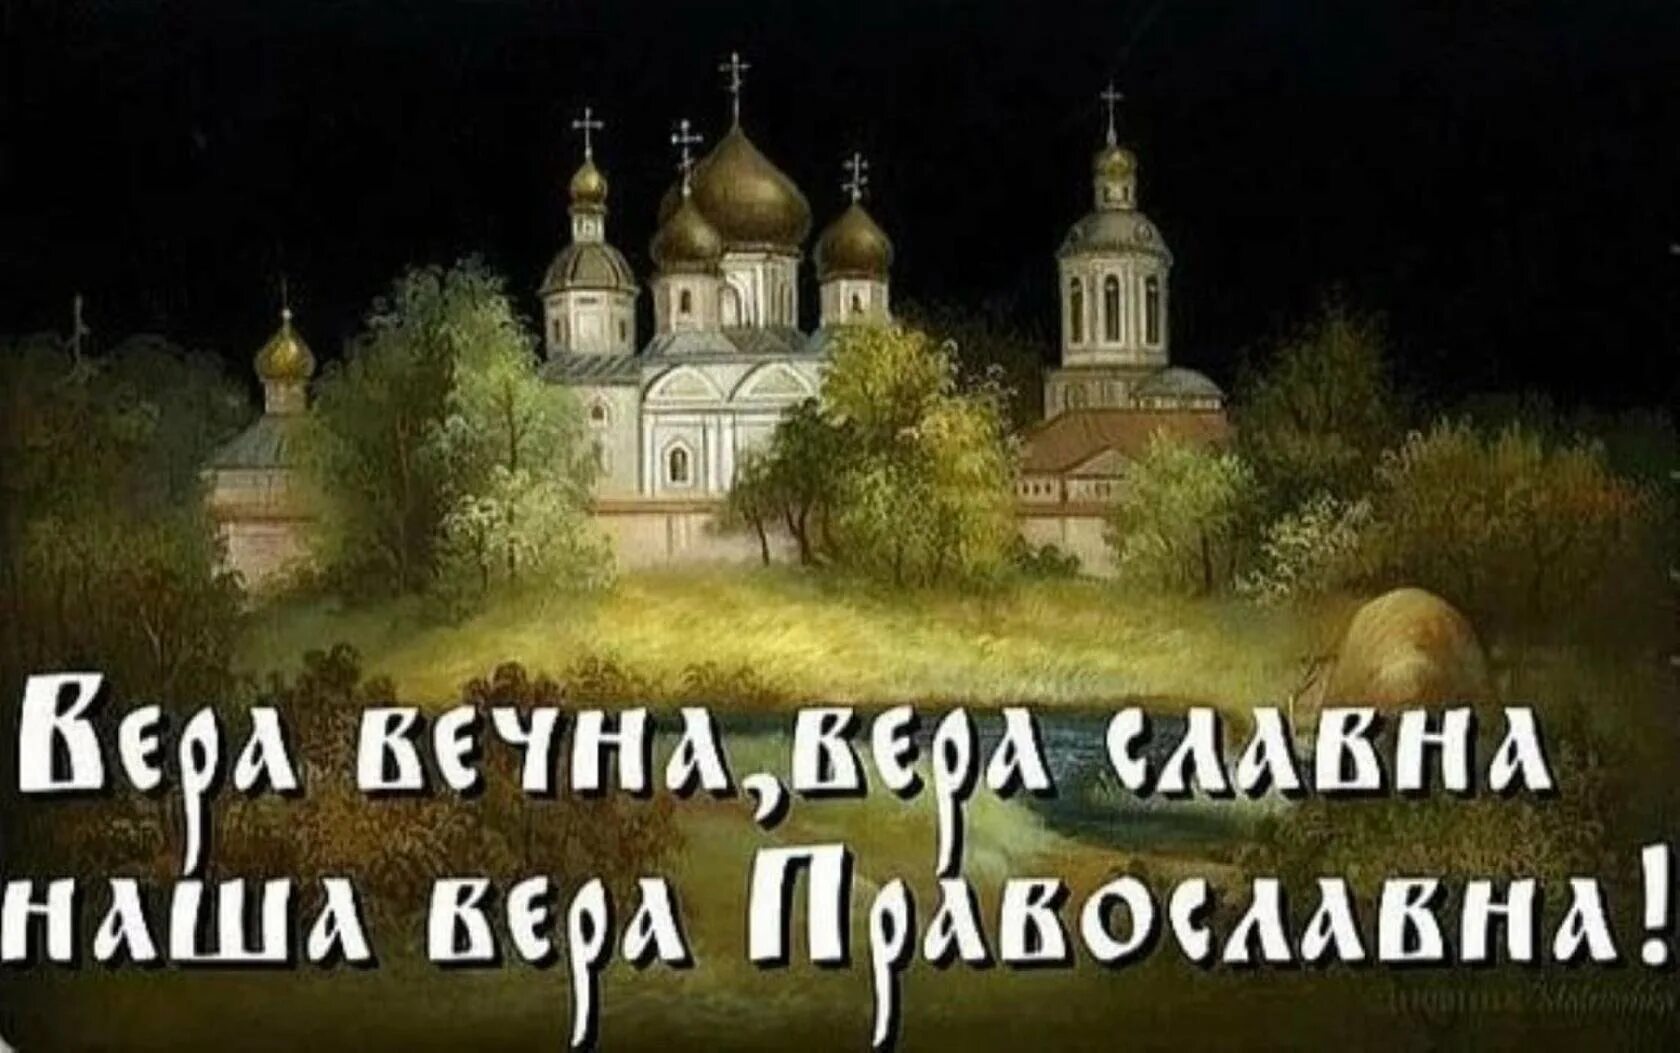 Песни про святую русь. Русь Святая православная. О вере славной -вере православной.